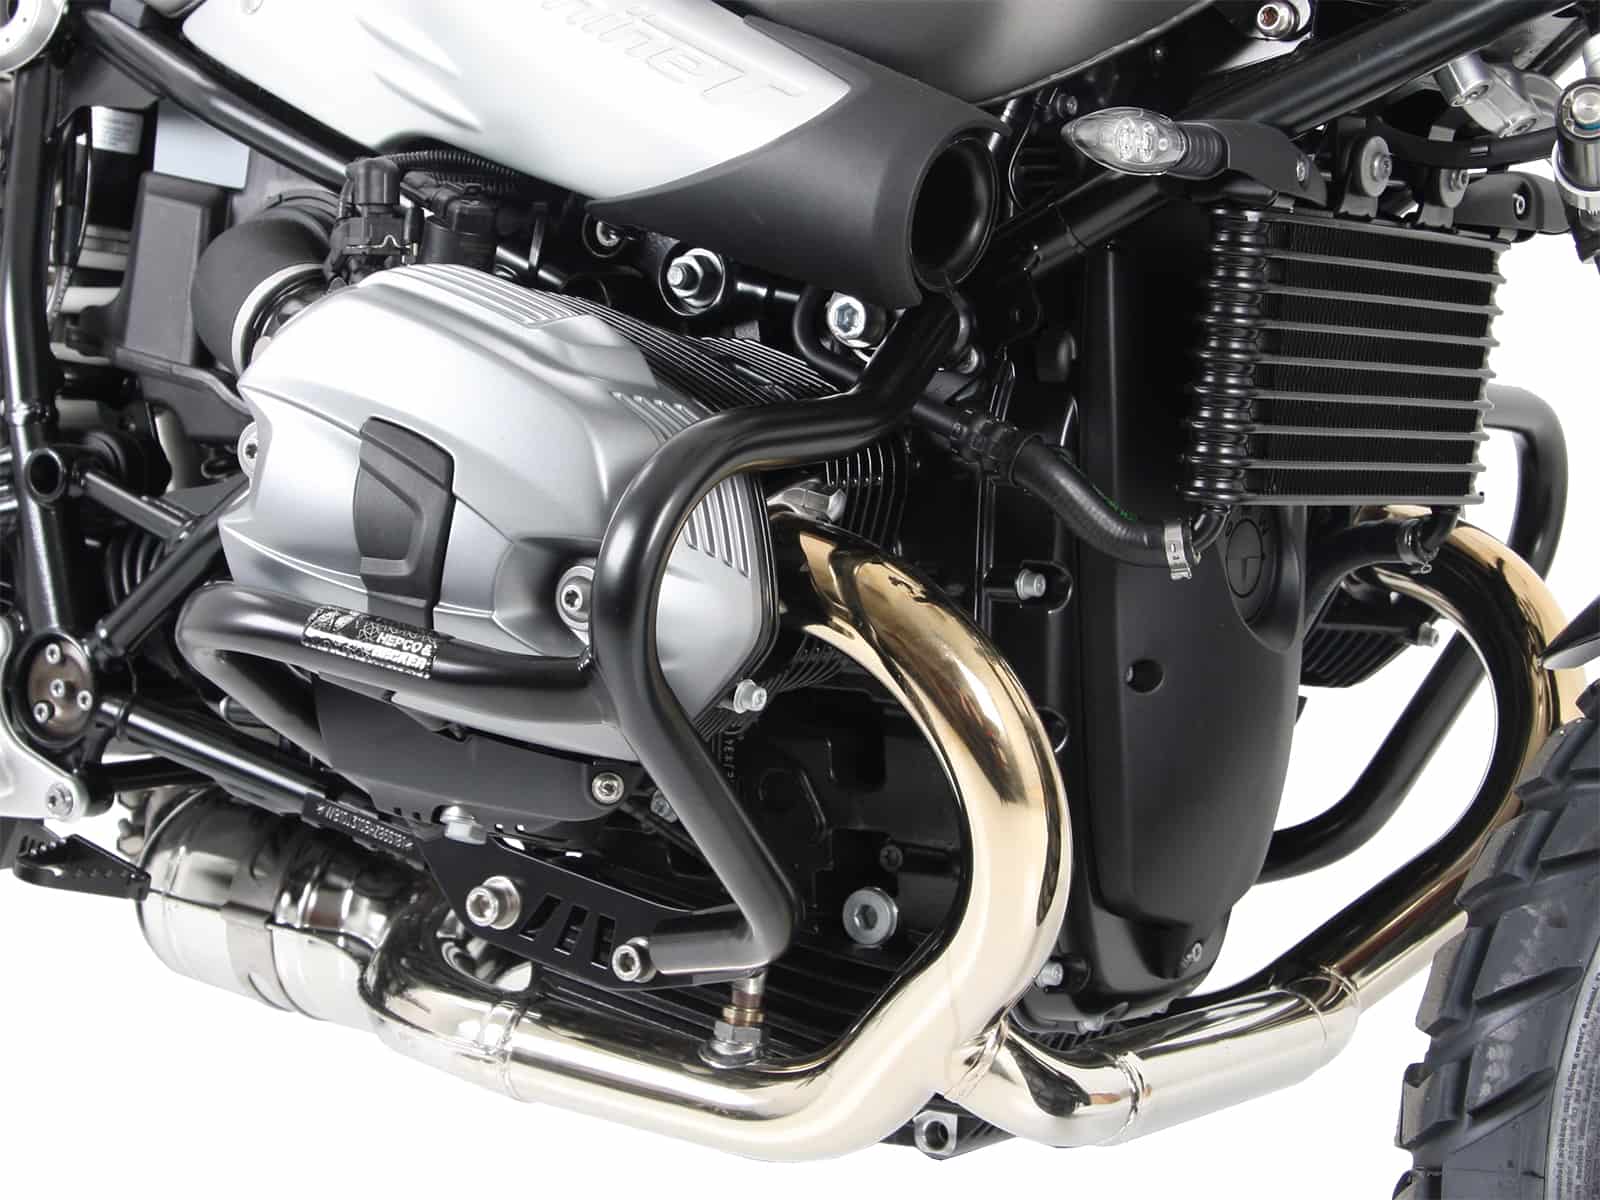 Engine protection bar black for BMW R nineT Scrambler (2016-)